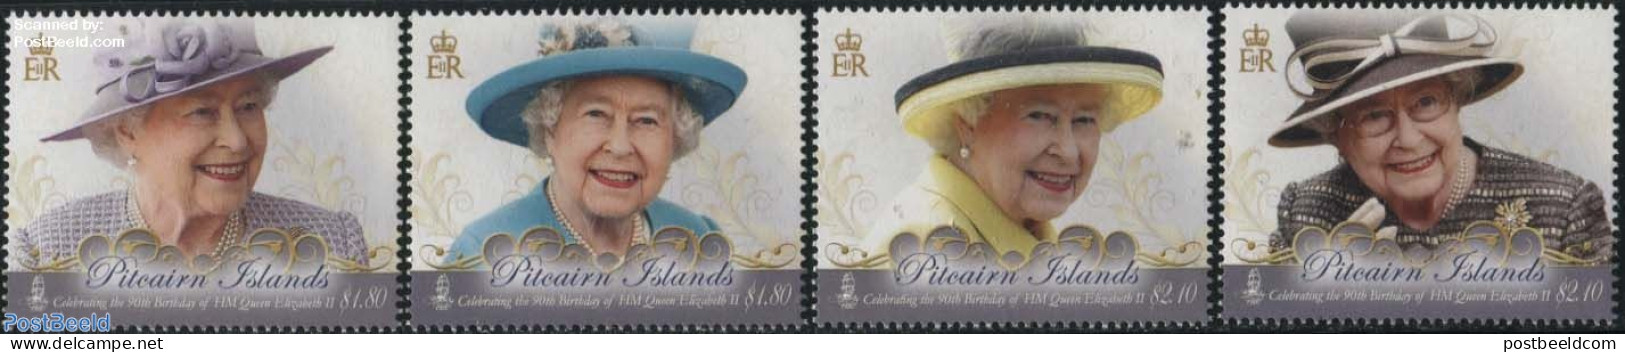 Pitcairn Islands 2016 Queen Elizabeth 90th Birthday 4v, Mint NH, History - Kings & Queens (Royalty) - Königshäuser, Adel